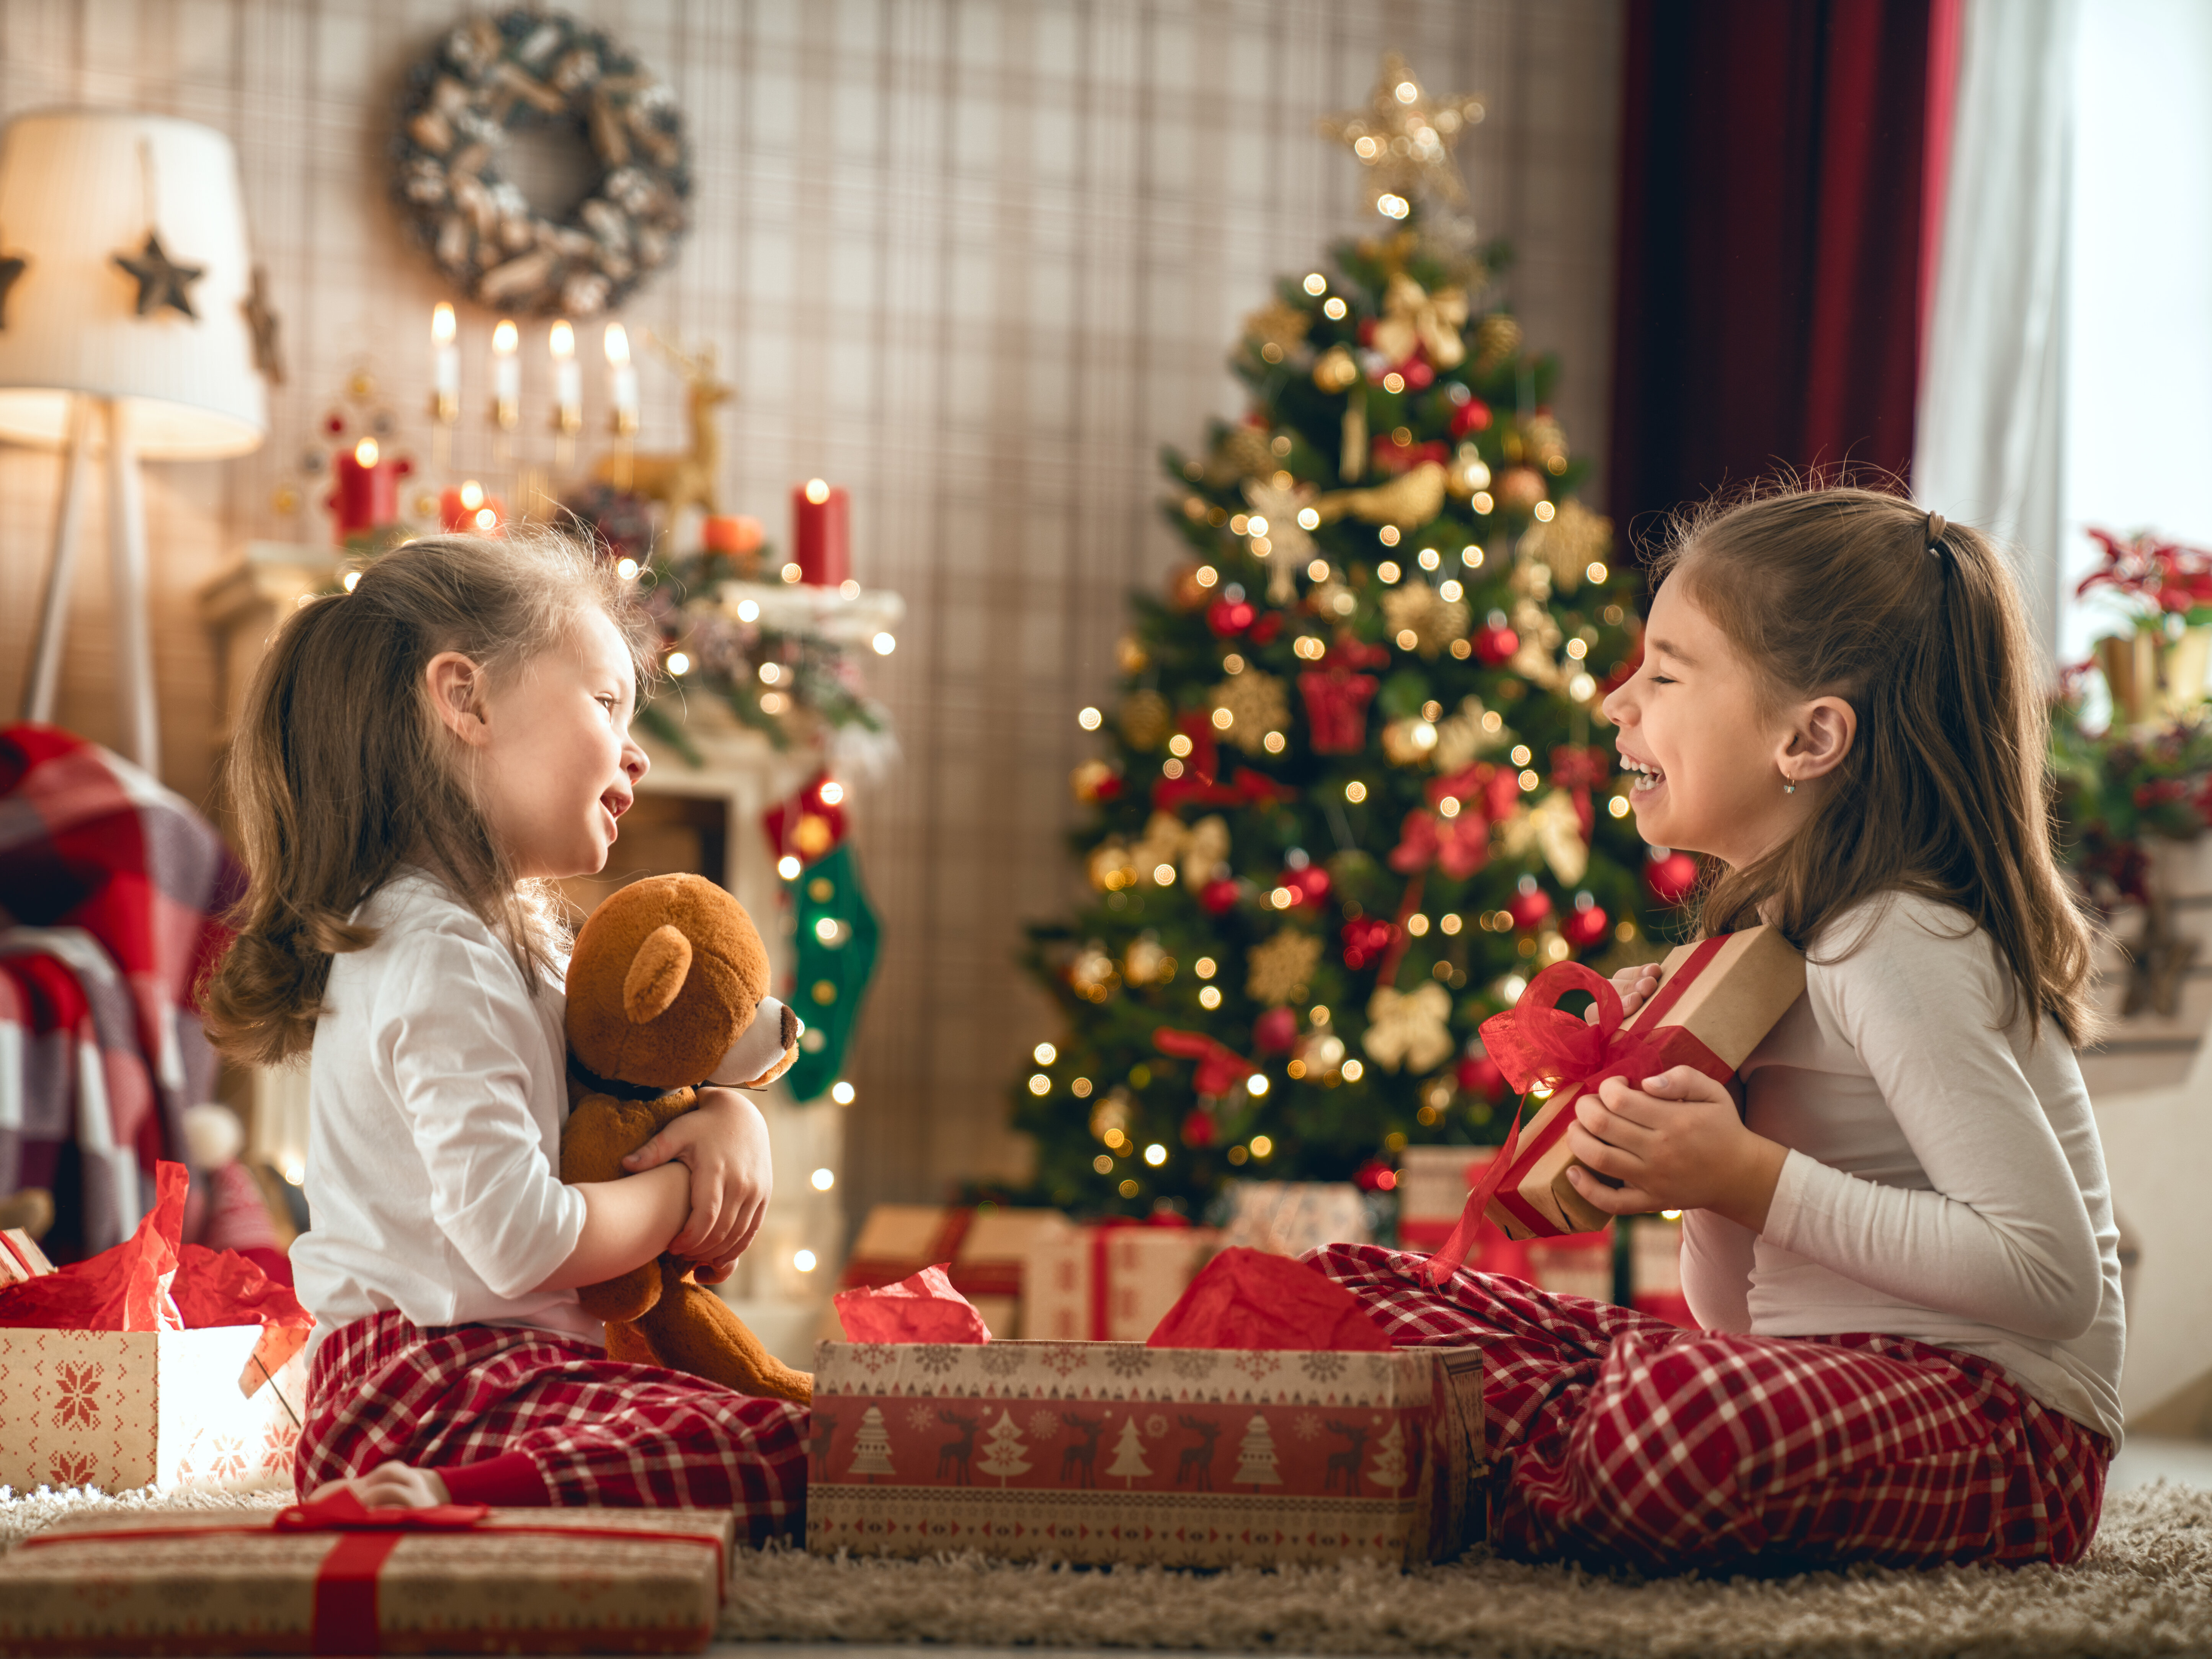 Kinder mit sicheren Weihnachtsgeschenken